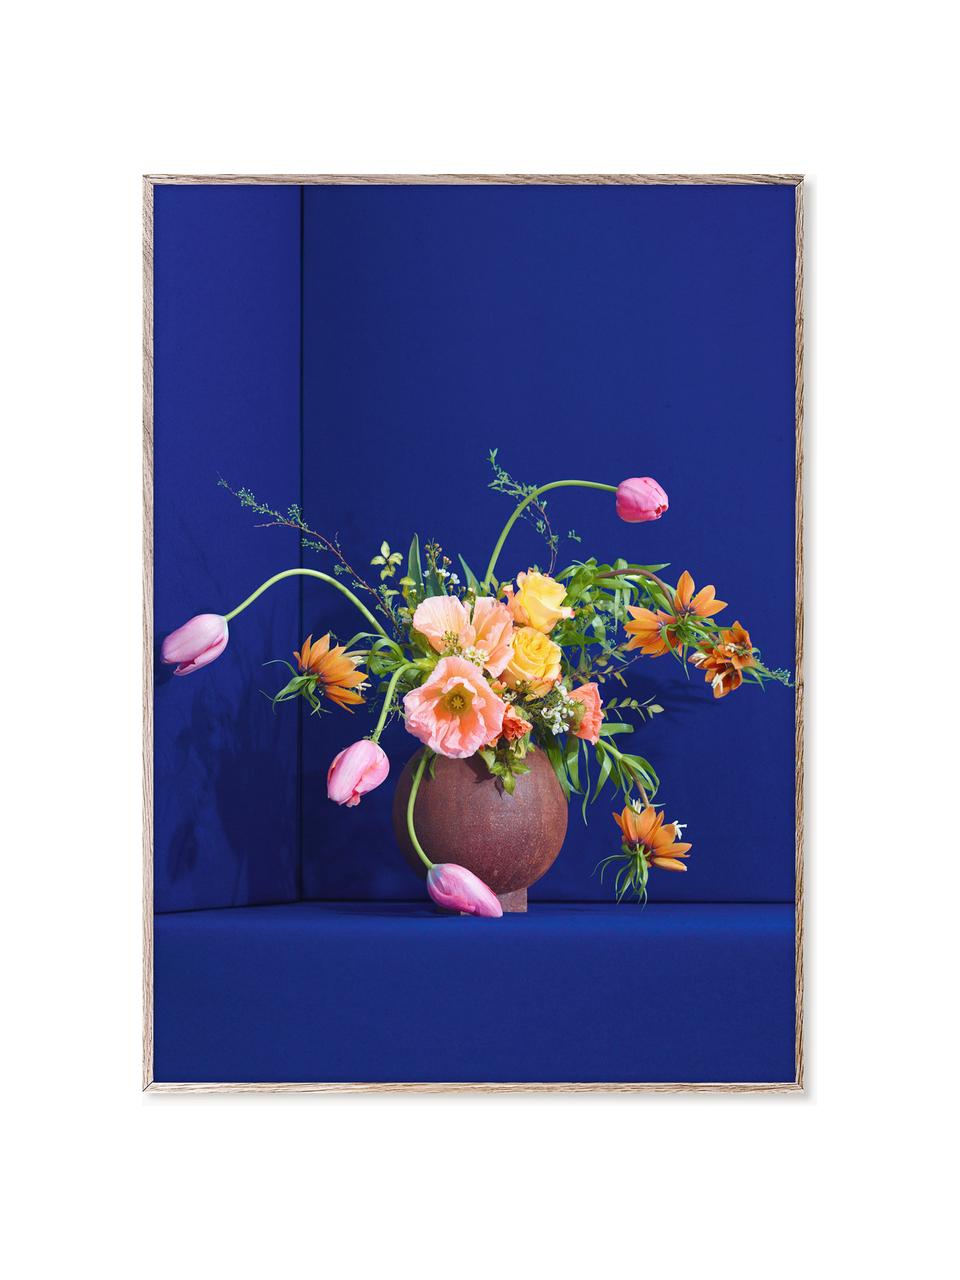 Poster Blomst 01, 230 g mattes veredeltes Papier, Digitaldruck mit 12 Farben.

Dieses Produkt wird aus nachhaltig gewonnenem, FSC®-zertifiziertem Holz gefertigt, Bunt, Royalblau, B 30 x H 40 cm